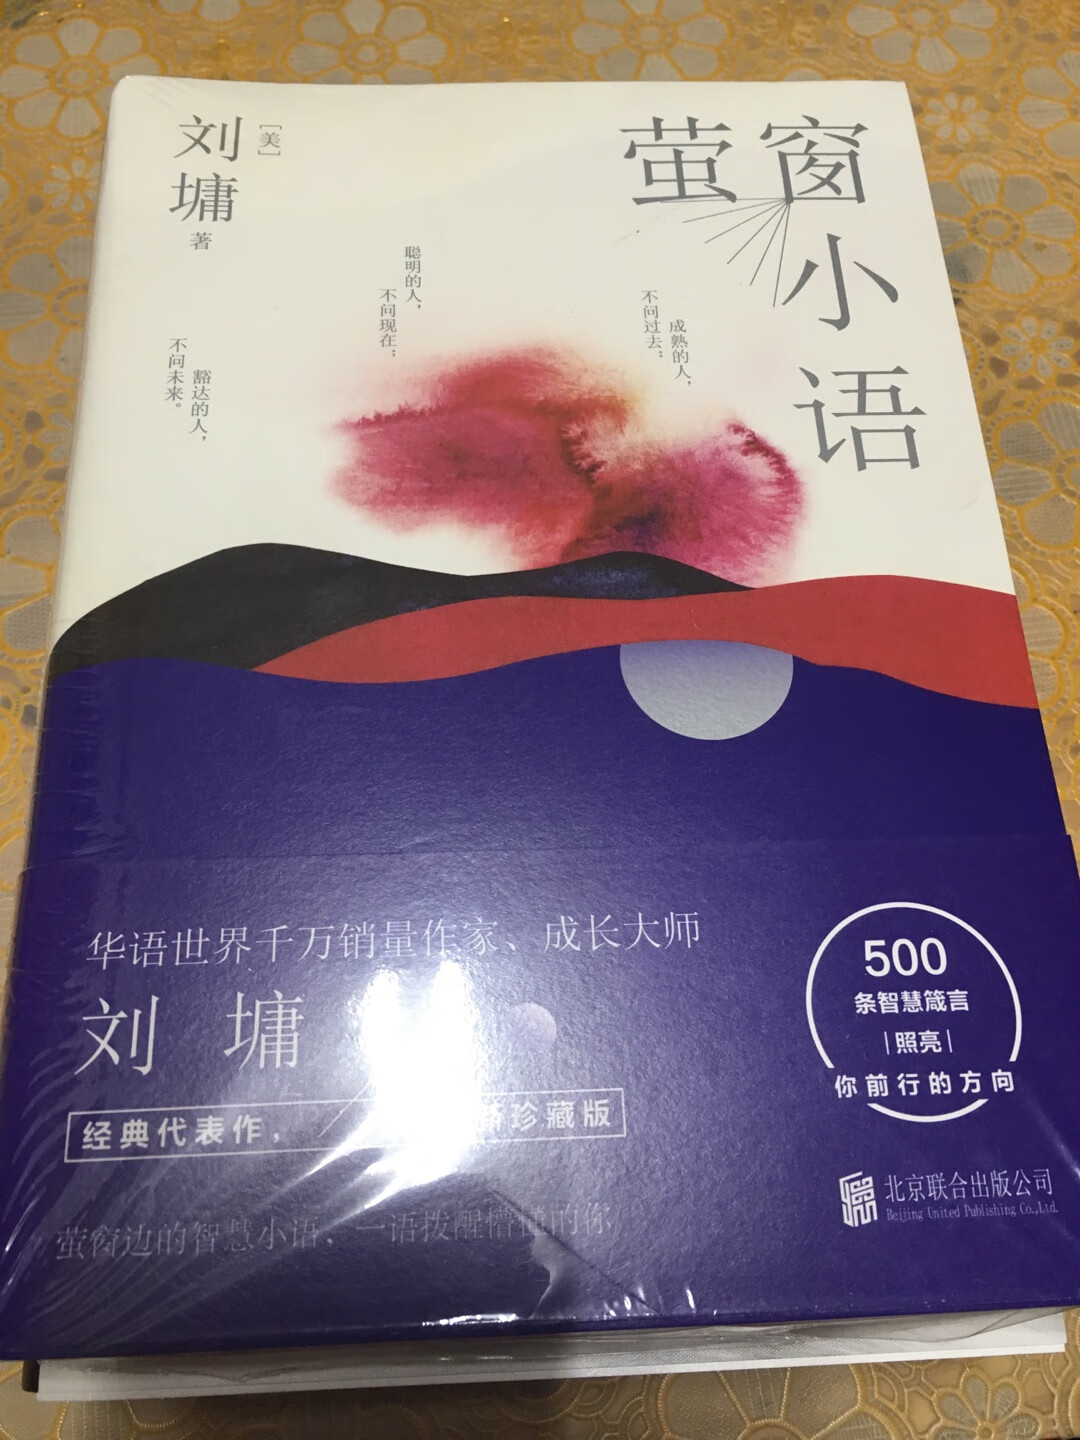 这本书很好，刘墉的书非常有深度，书本纸张是蛮好的，读起来很有品味！里面有很多珠言妙语，值得细细品读！好书推荐给大家哦！